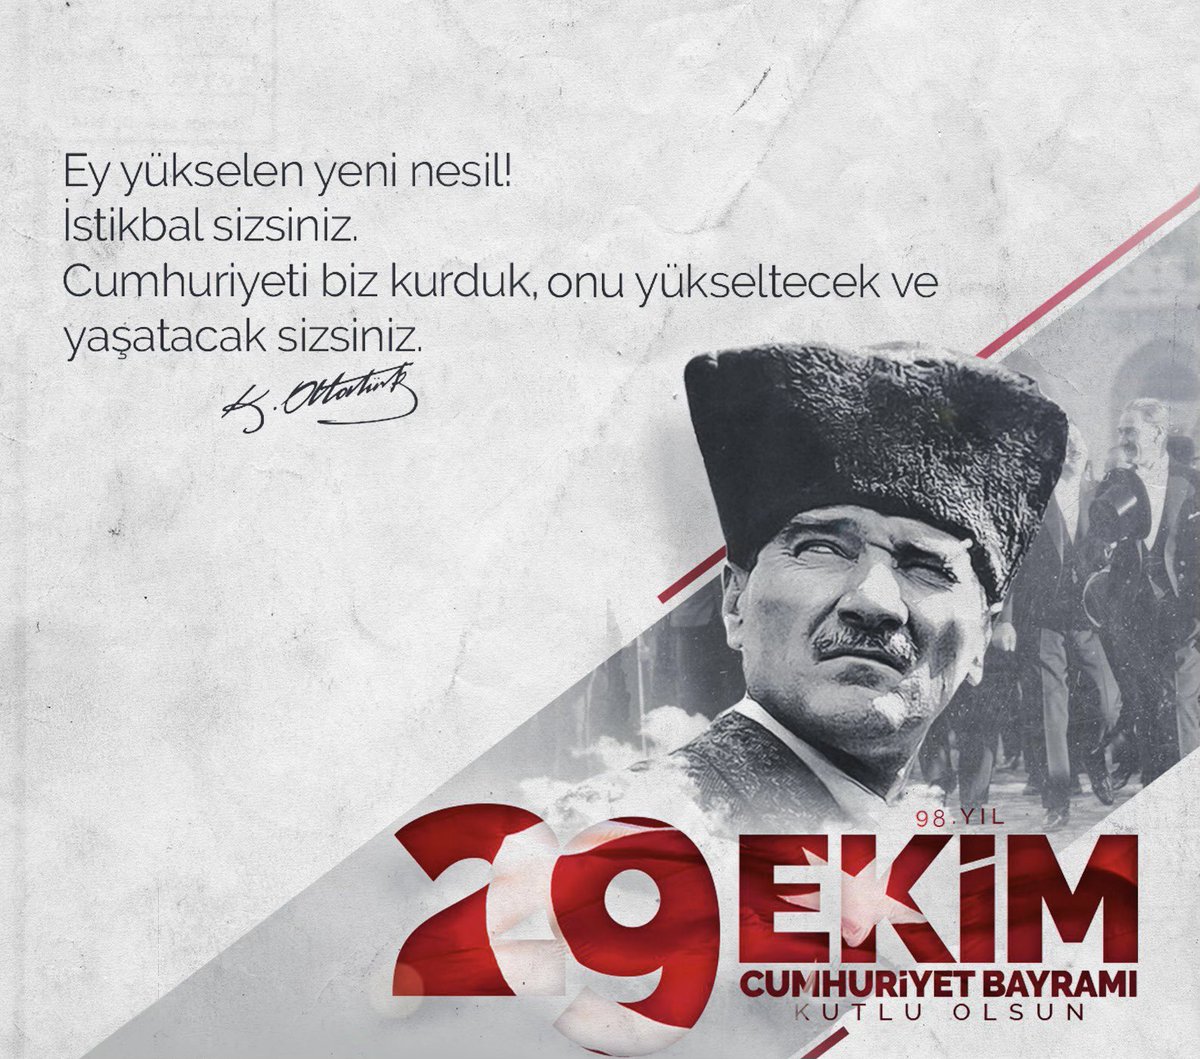 Cumhuriyetimizin kurucusu Gazi Mustafa Kemal Atatürk başta olmak üzere silah arkadaşlarını ve aziz şehitlerimizi rahmetle, kahraman gazilerimizi minnet ve şükranla anıyor; #29EkimCumhuriyetBayramı’mızı kutluyorum.